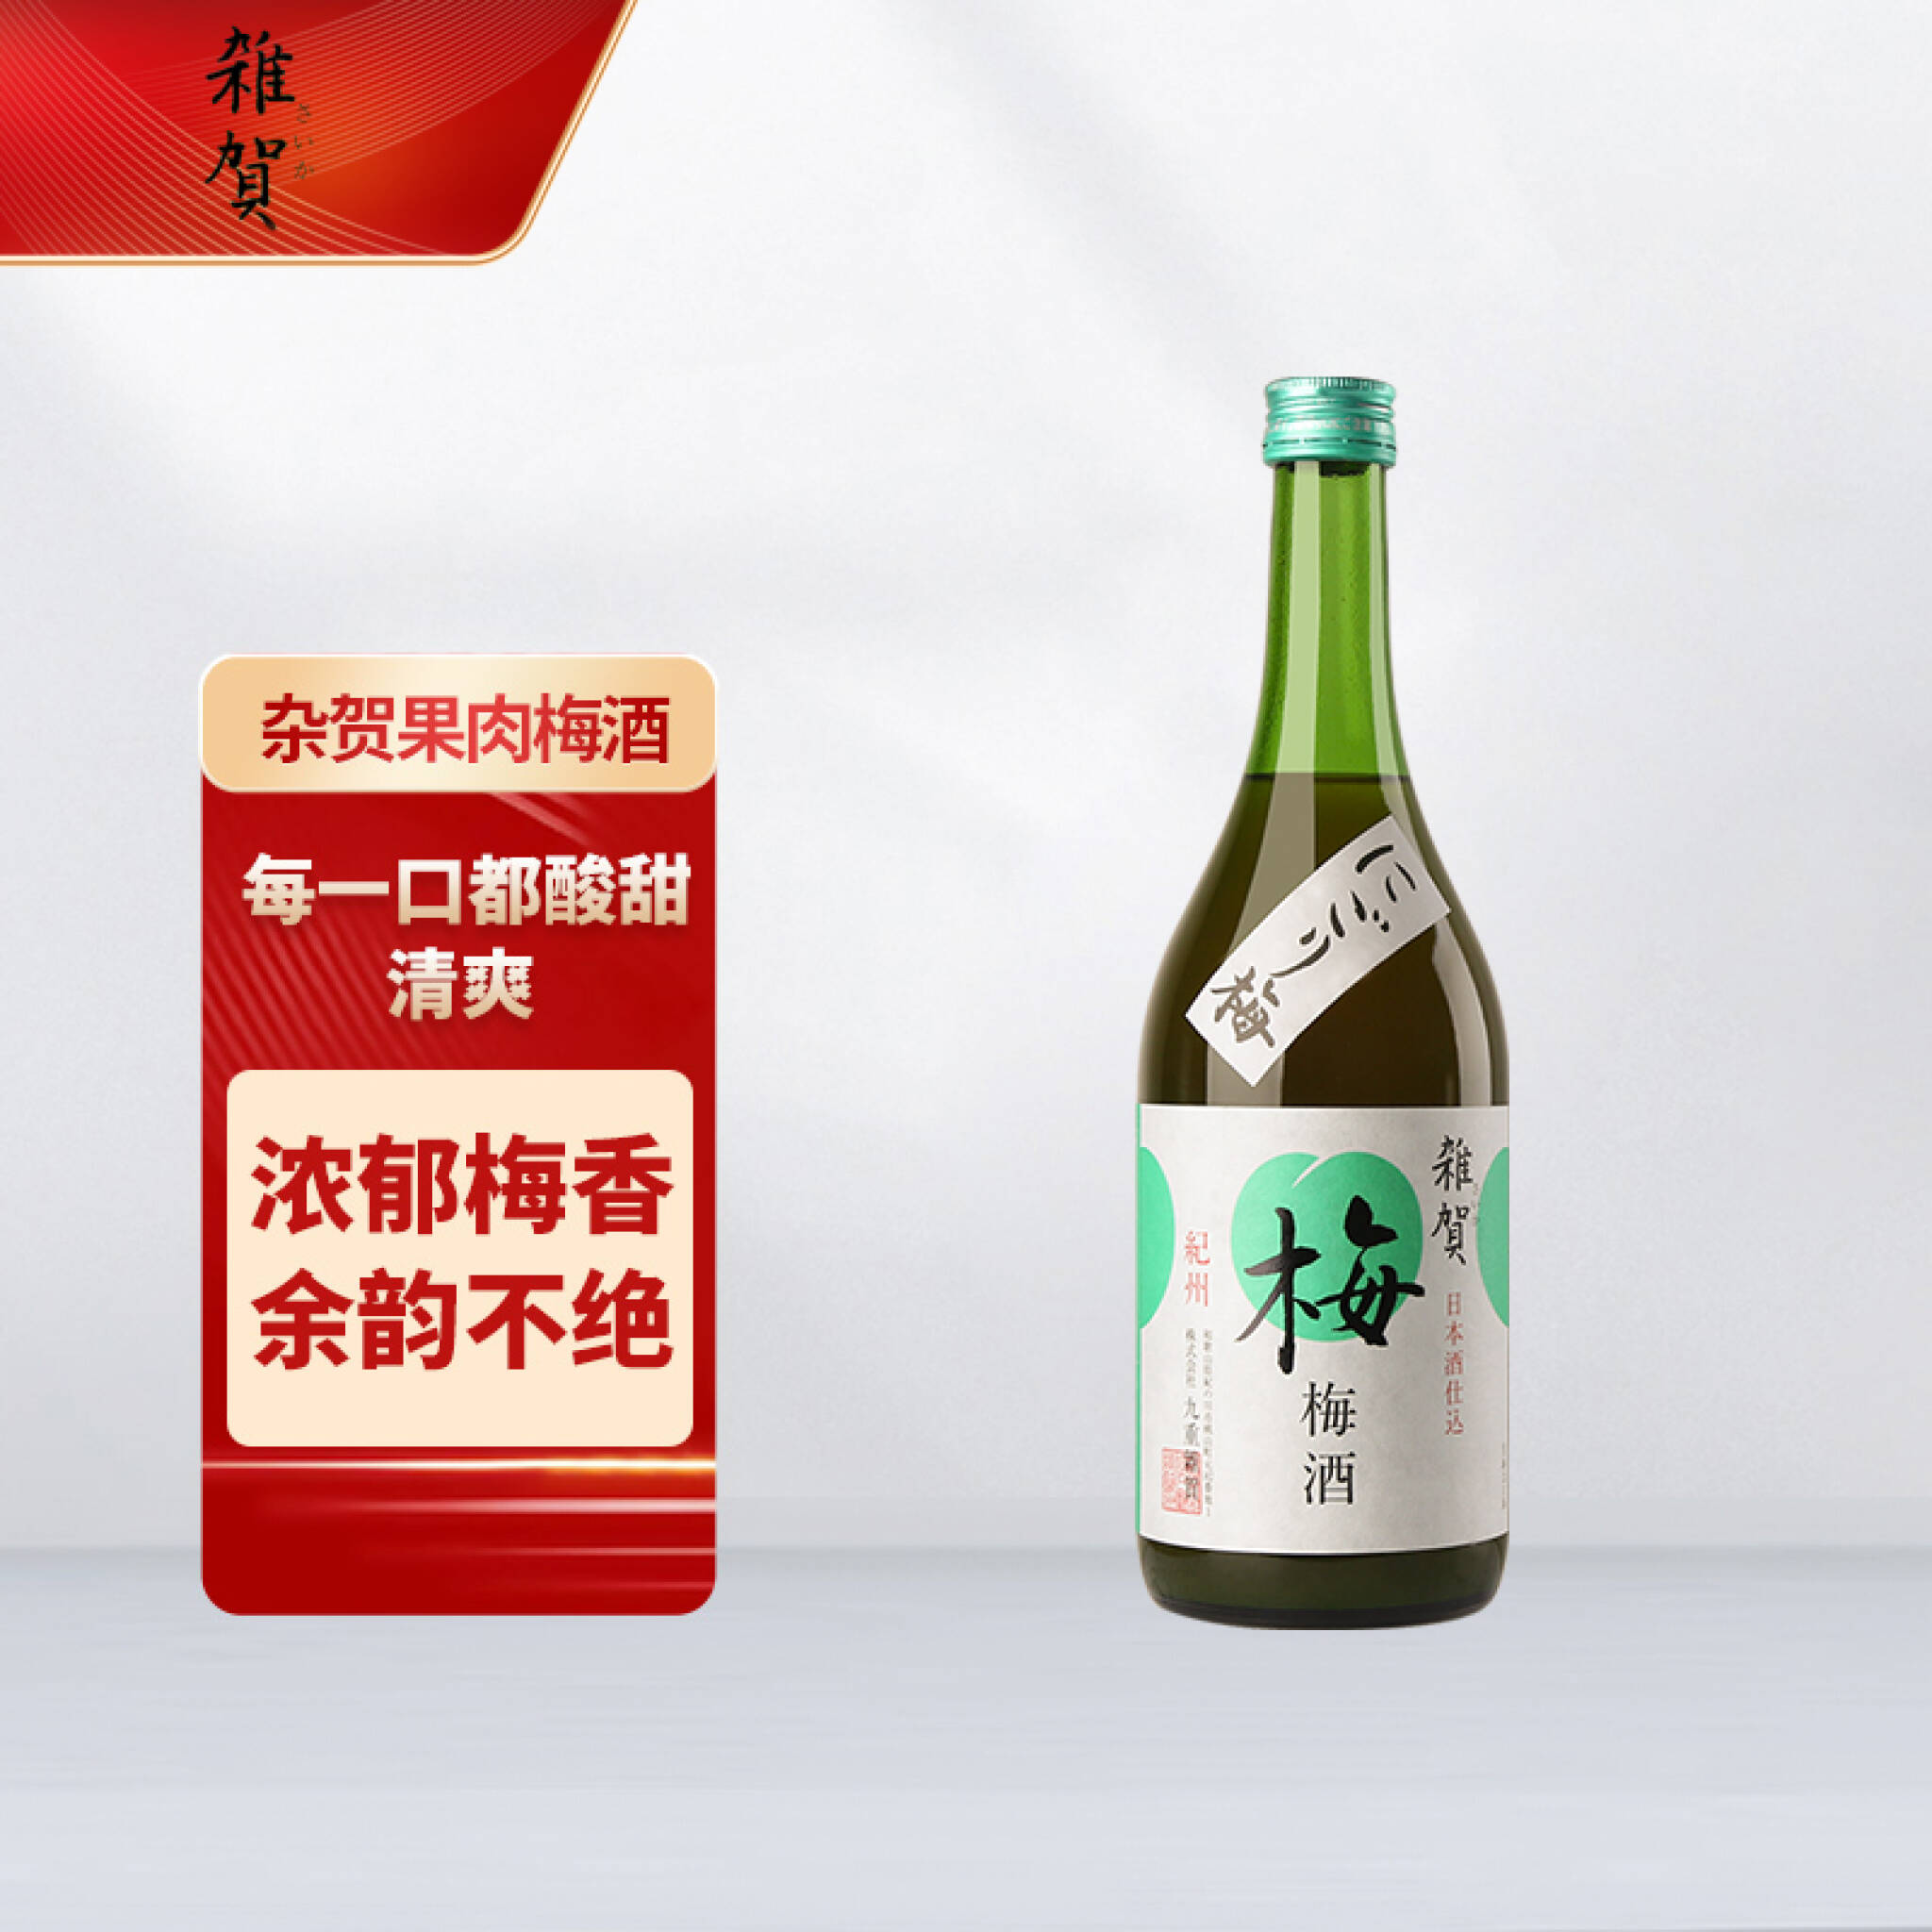 正規品通販サイト 黎 梅酒17年(黒糖梅酒) 1,000本限定抽選販売品 